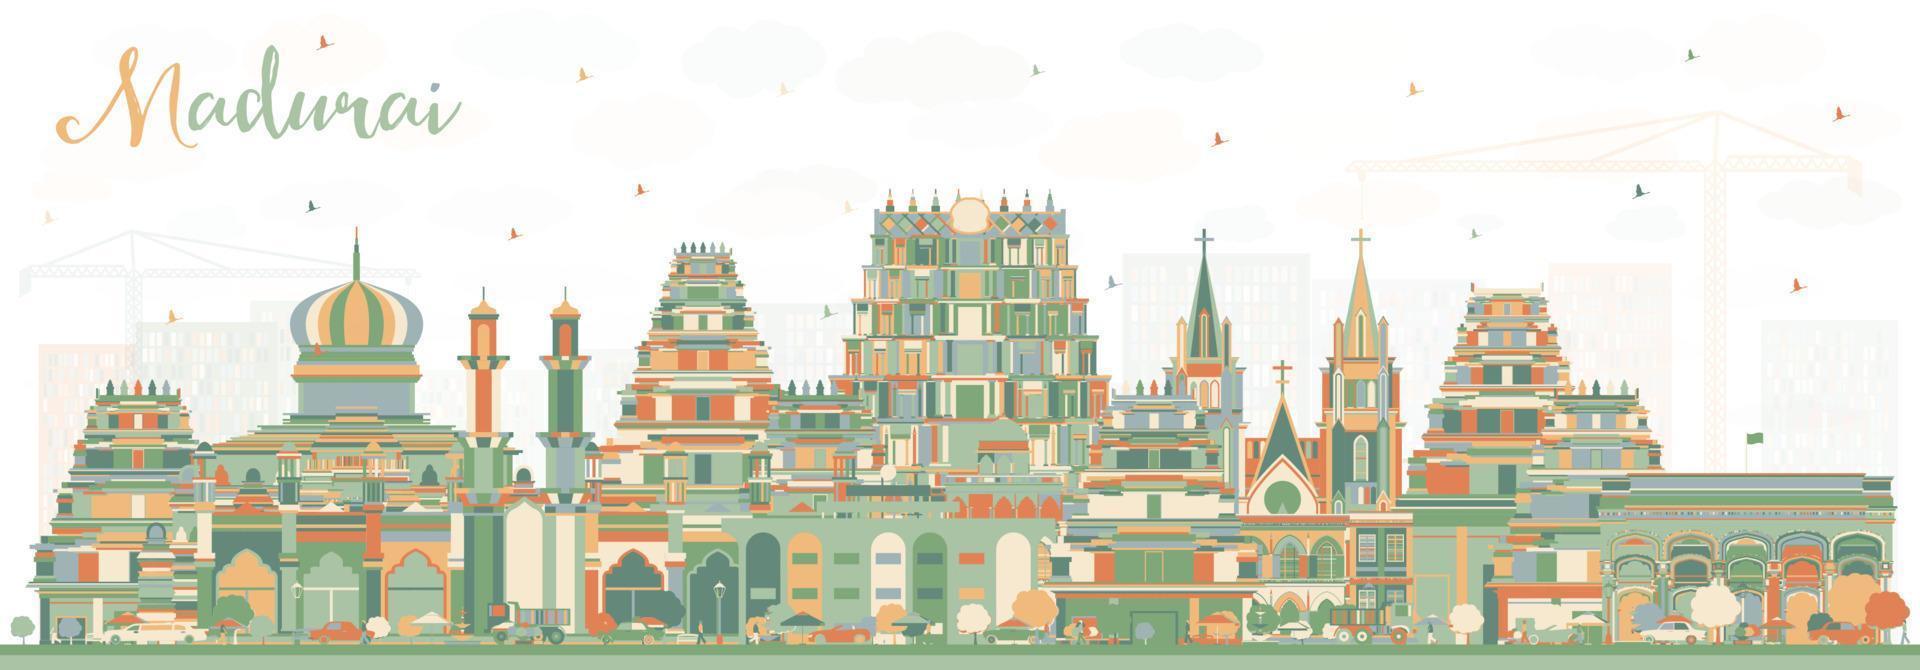 horizonte de la ciudad de madurai india con edificios de color. vector